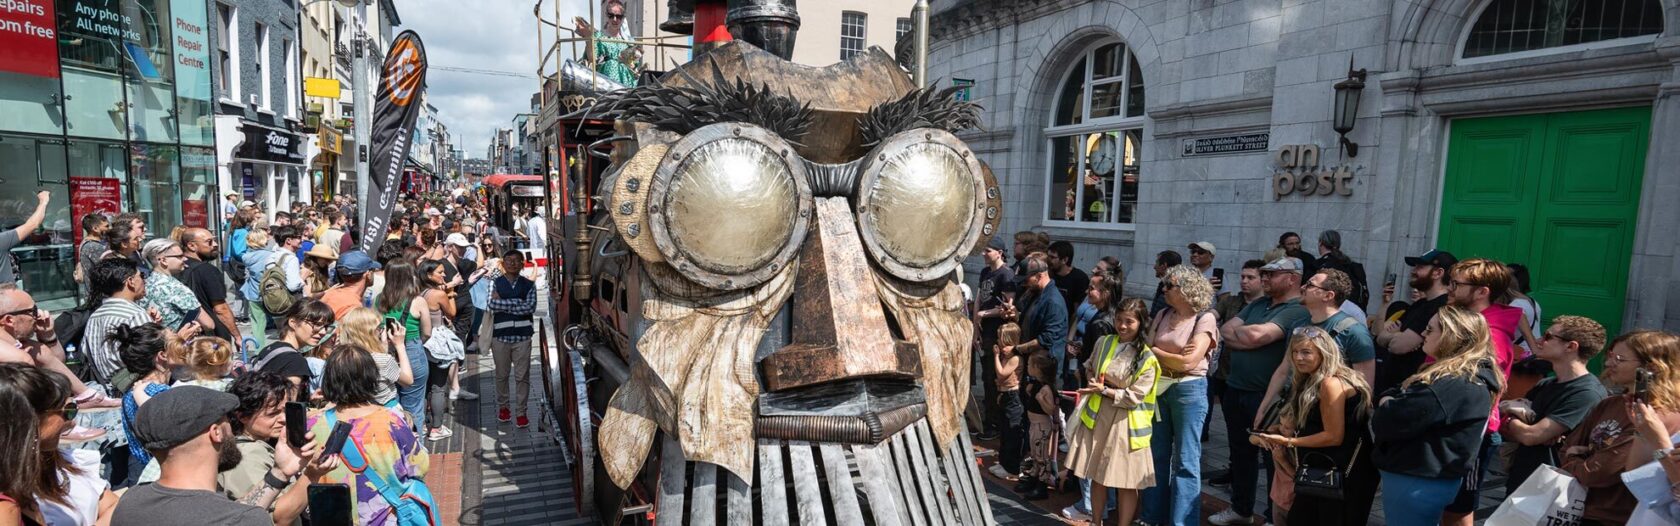 Cork midsummer festival parade